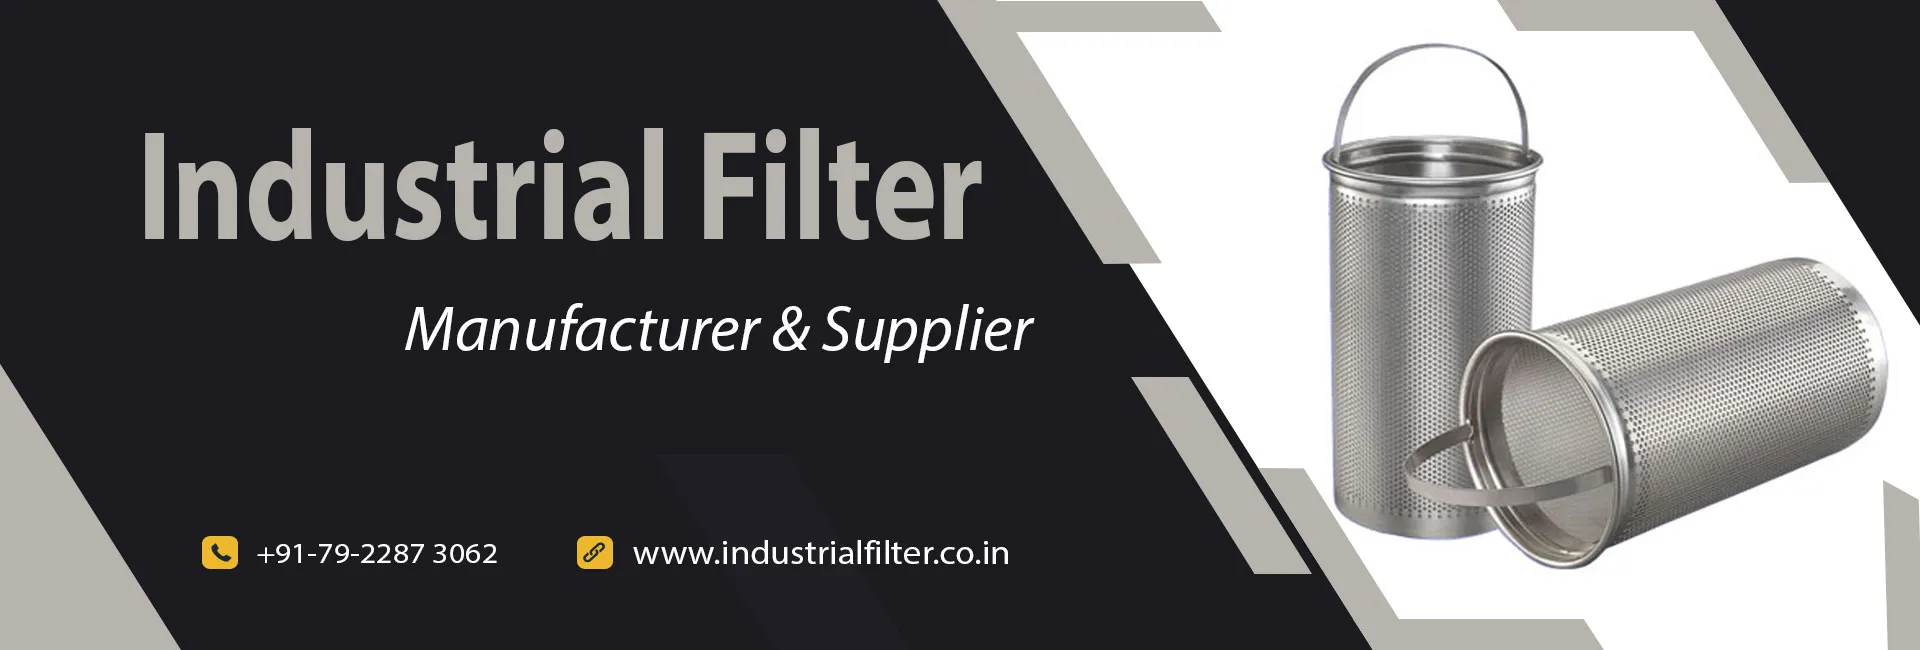 Industrial Filter Manufacturer